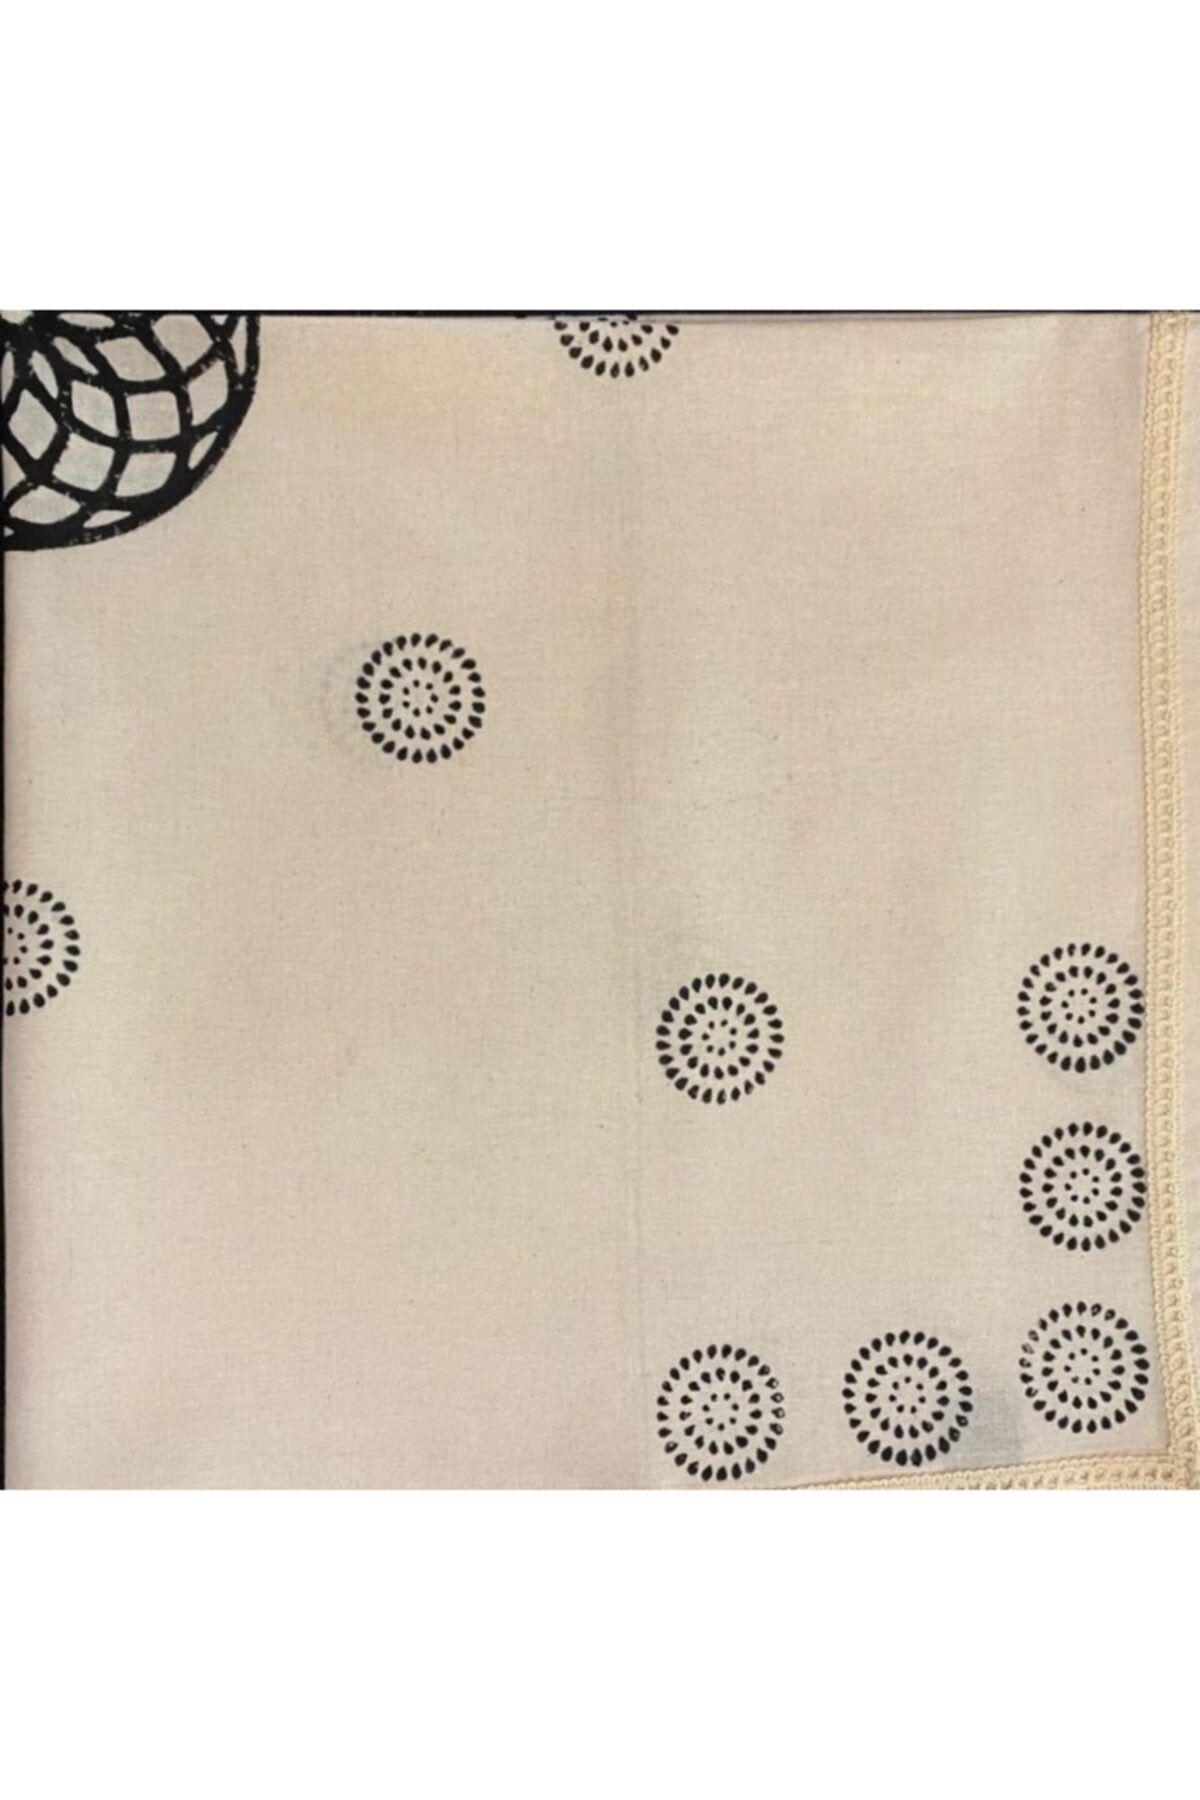 Demeter Tekstil Tasarım Yaşam Döngüsü Ahşap Baskı Kare Örtü